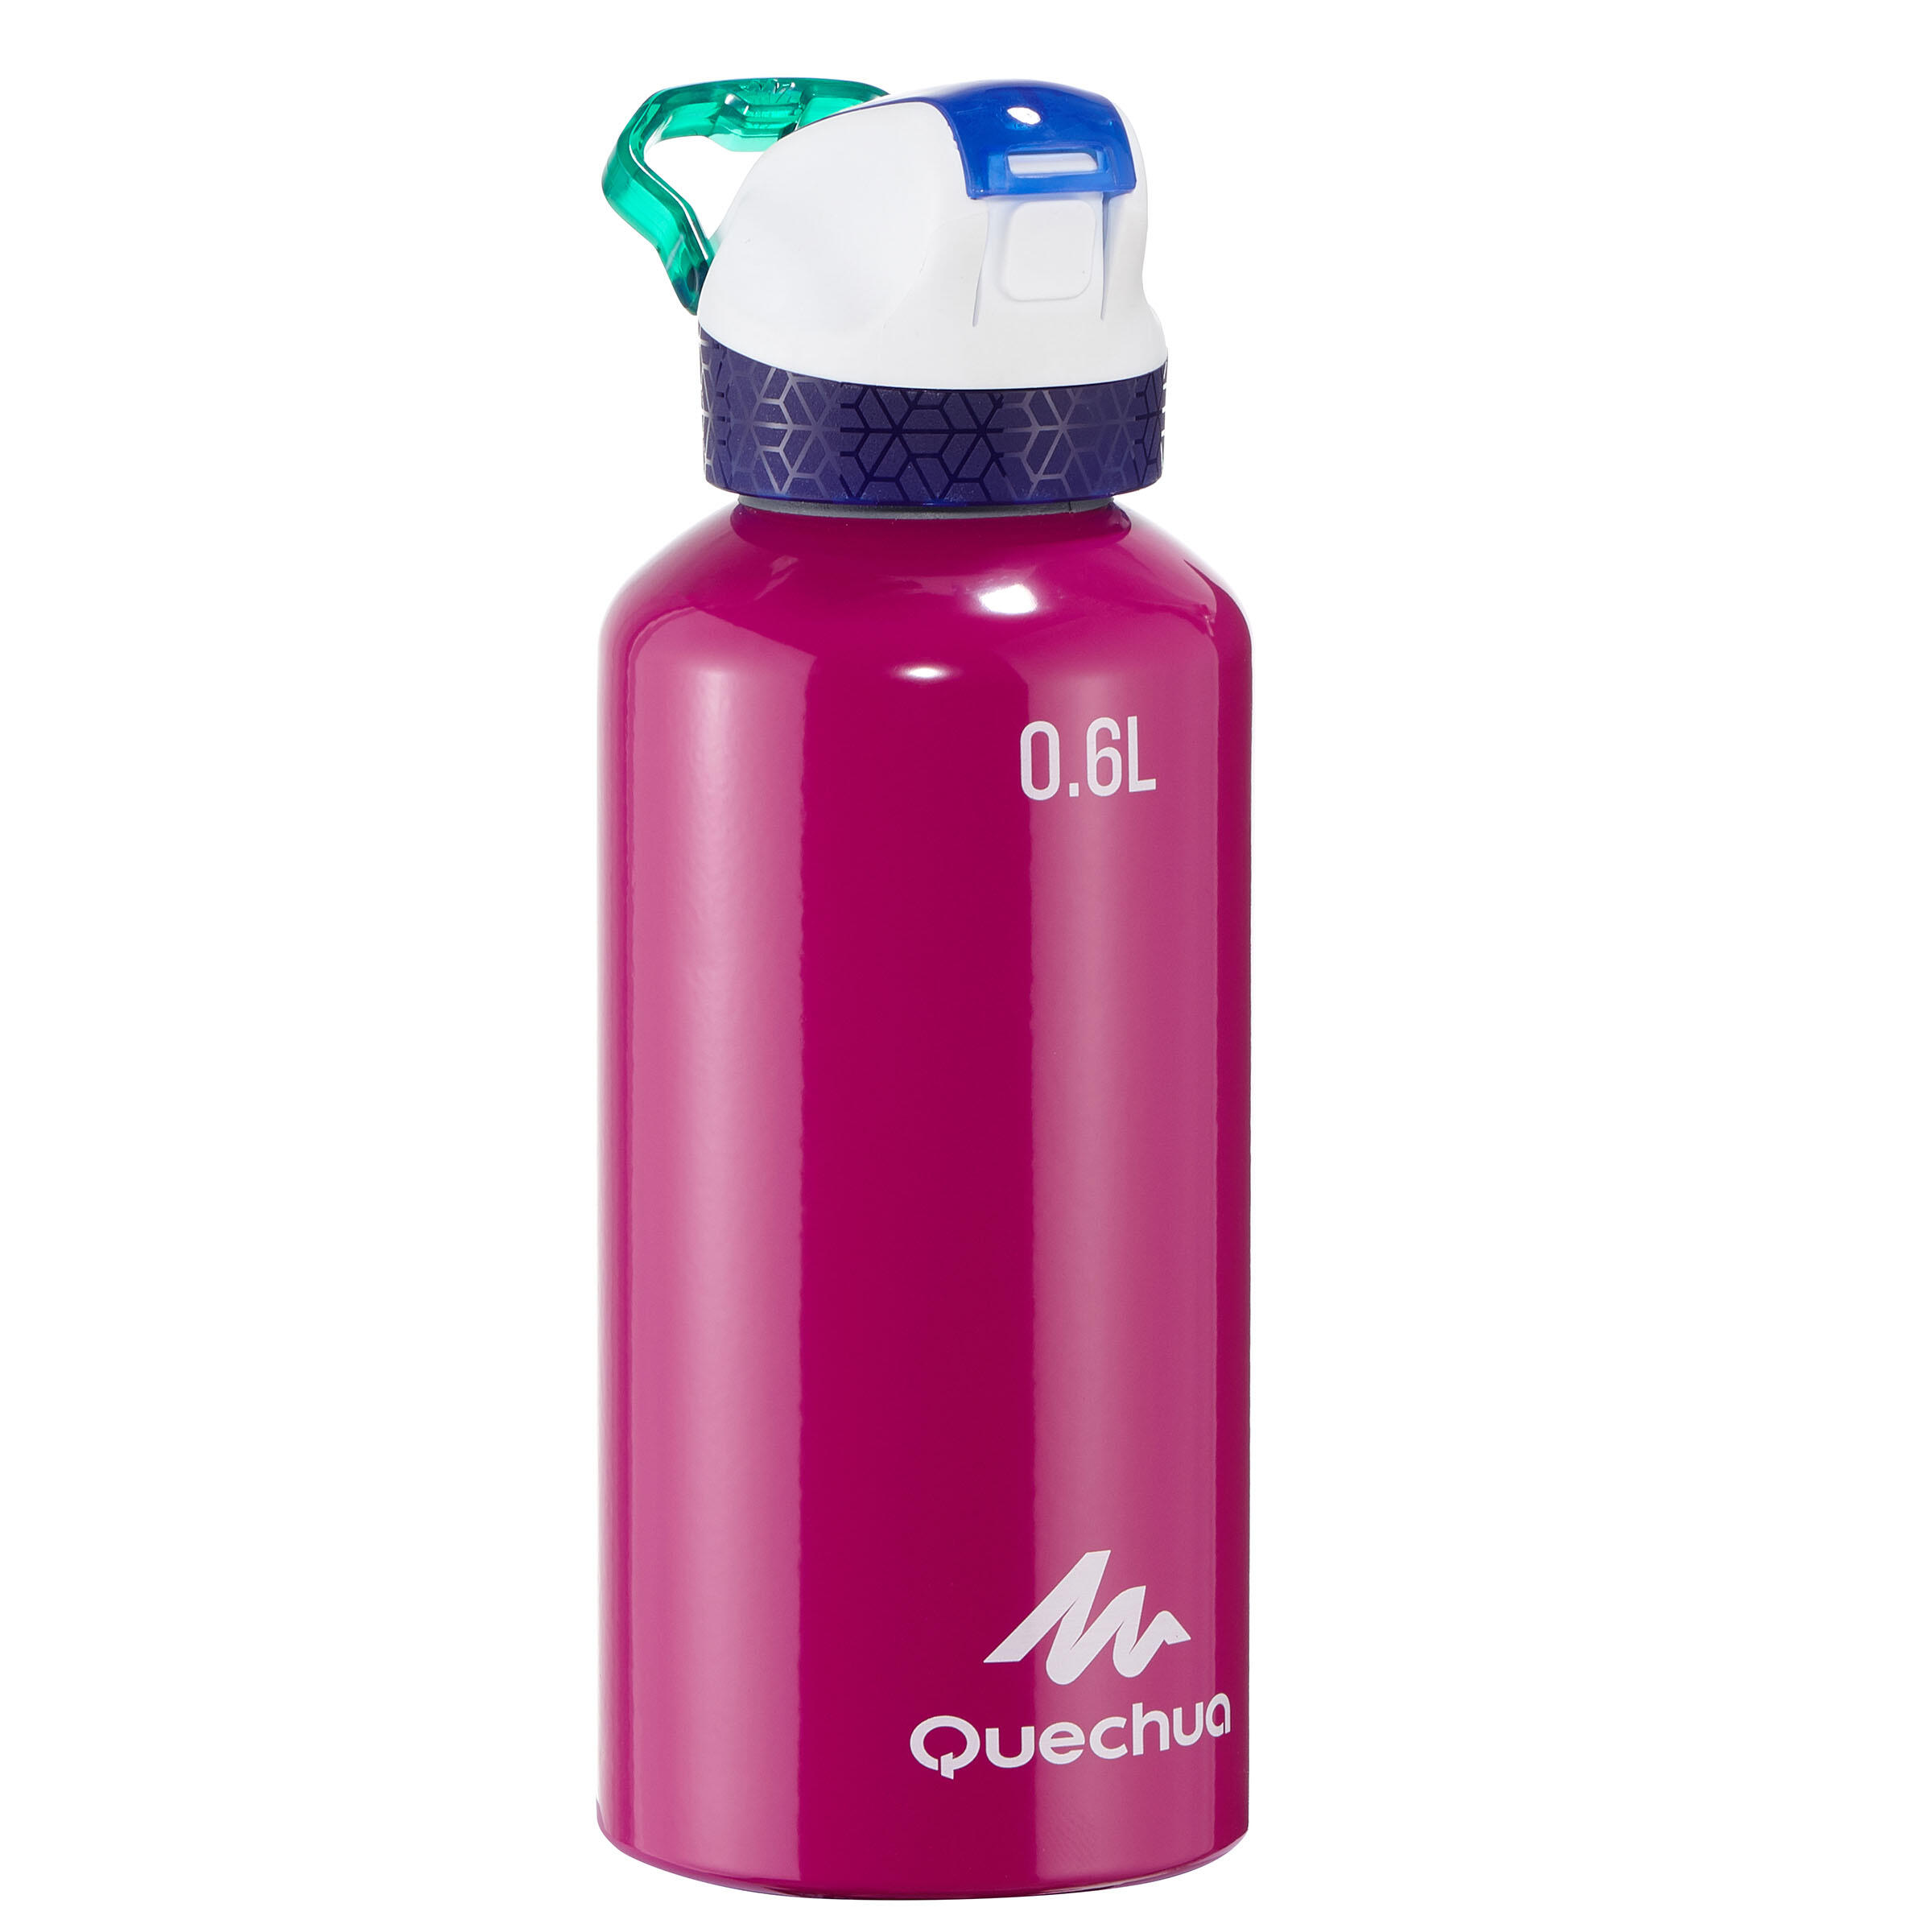 QUECHUA 0.6L Quick-Opening Aluminium Bottle - Purple